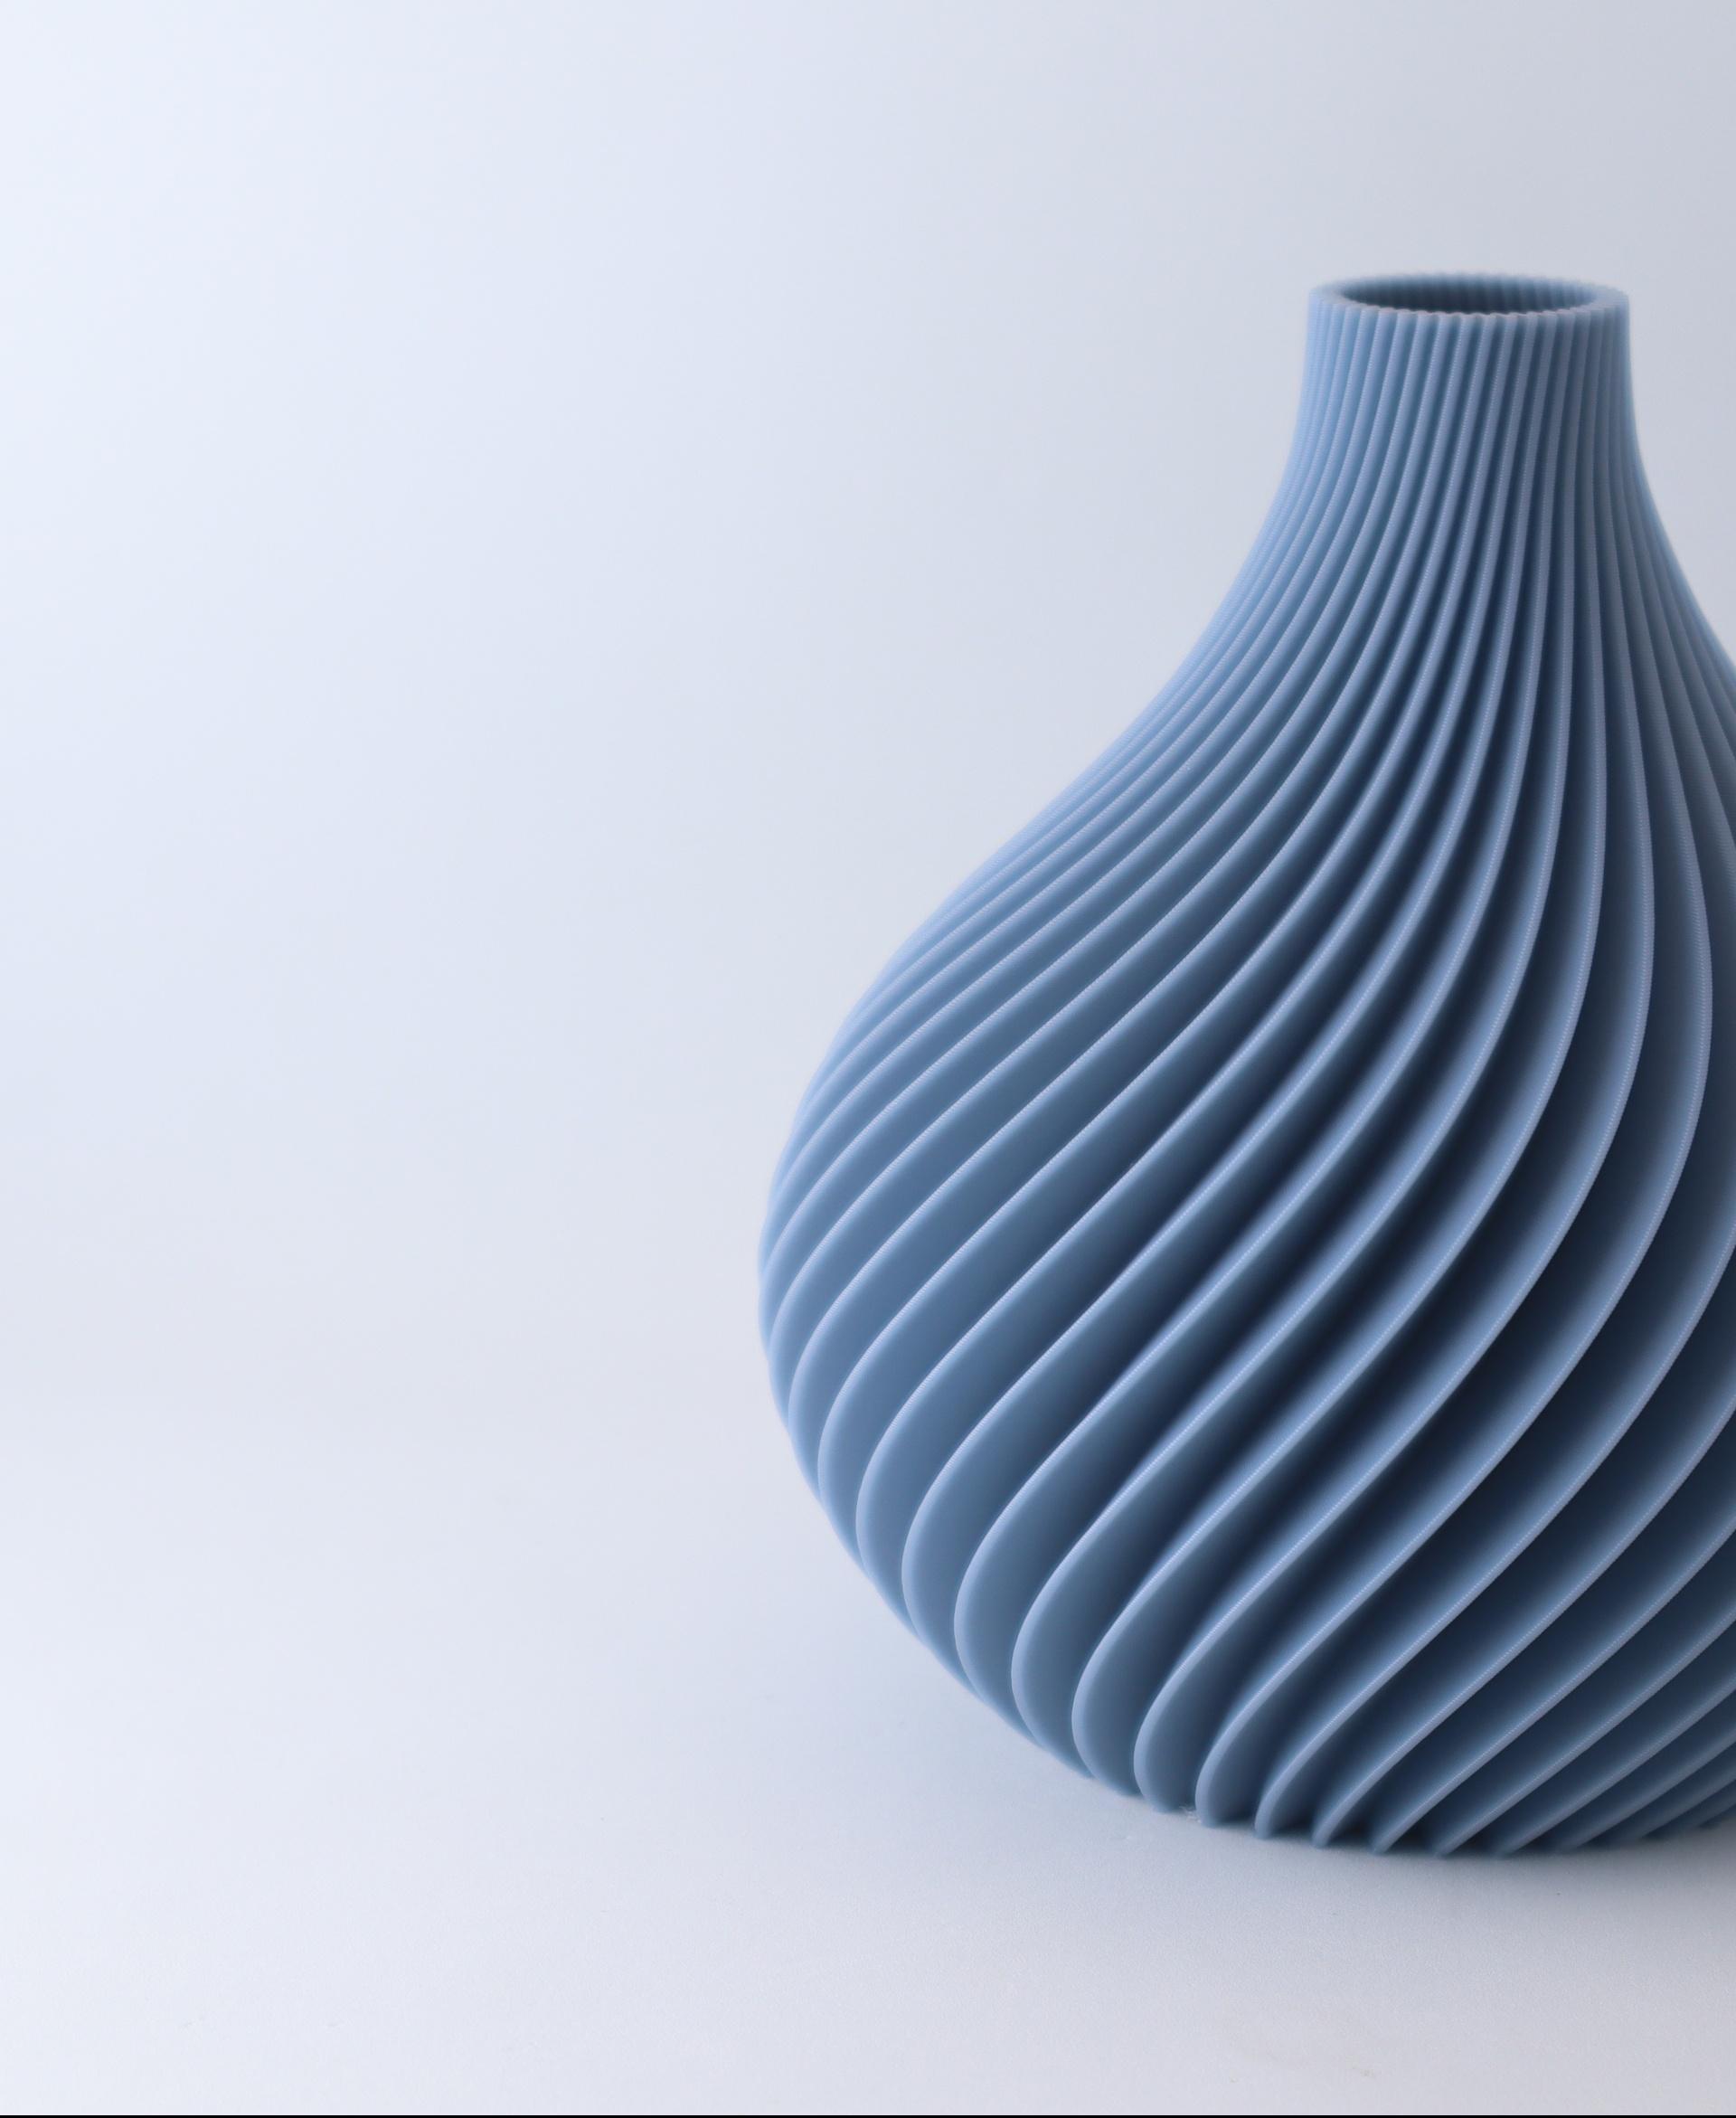 The Scand Vase - A Botany Chic Vase 3d model